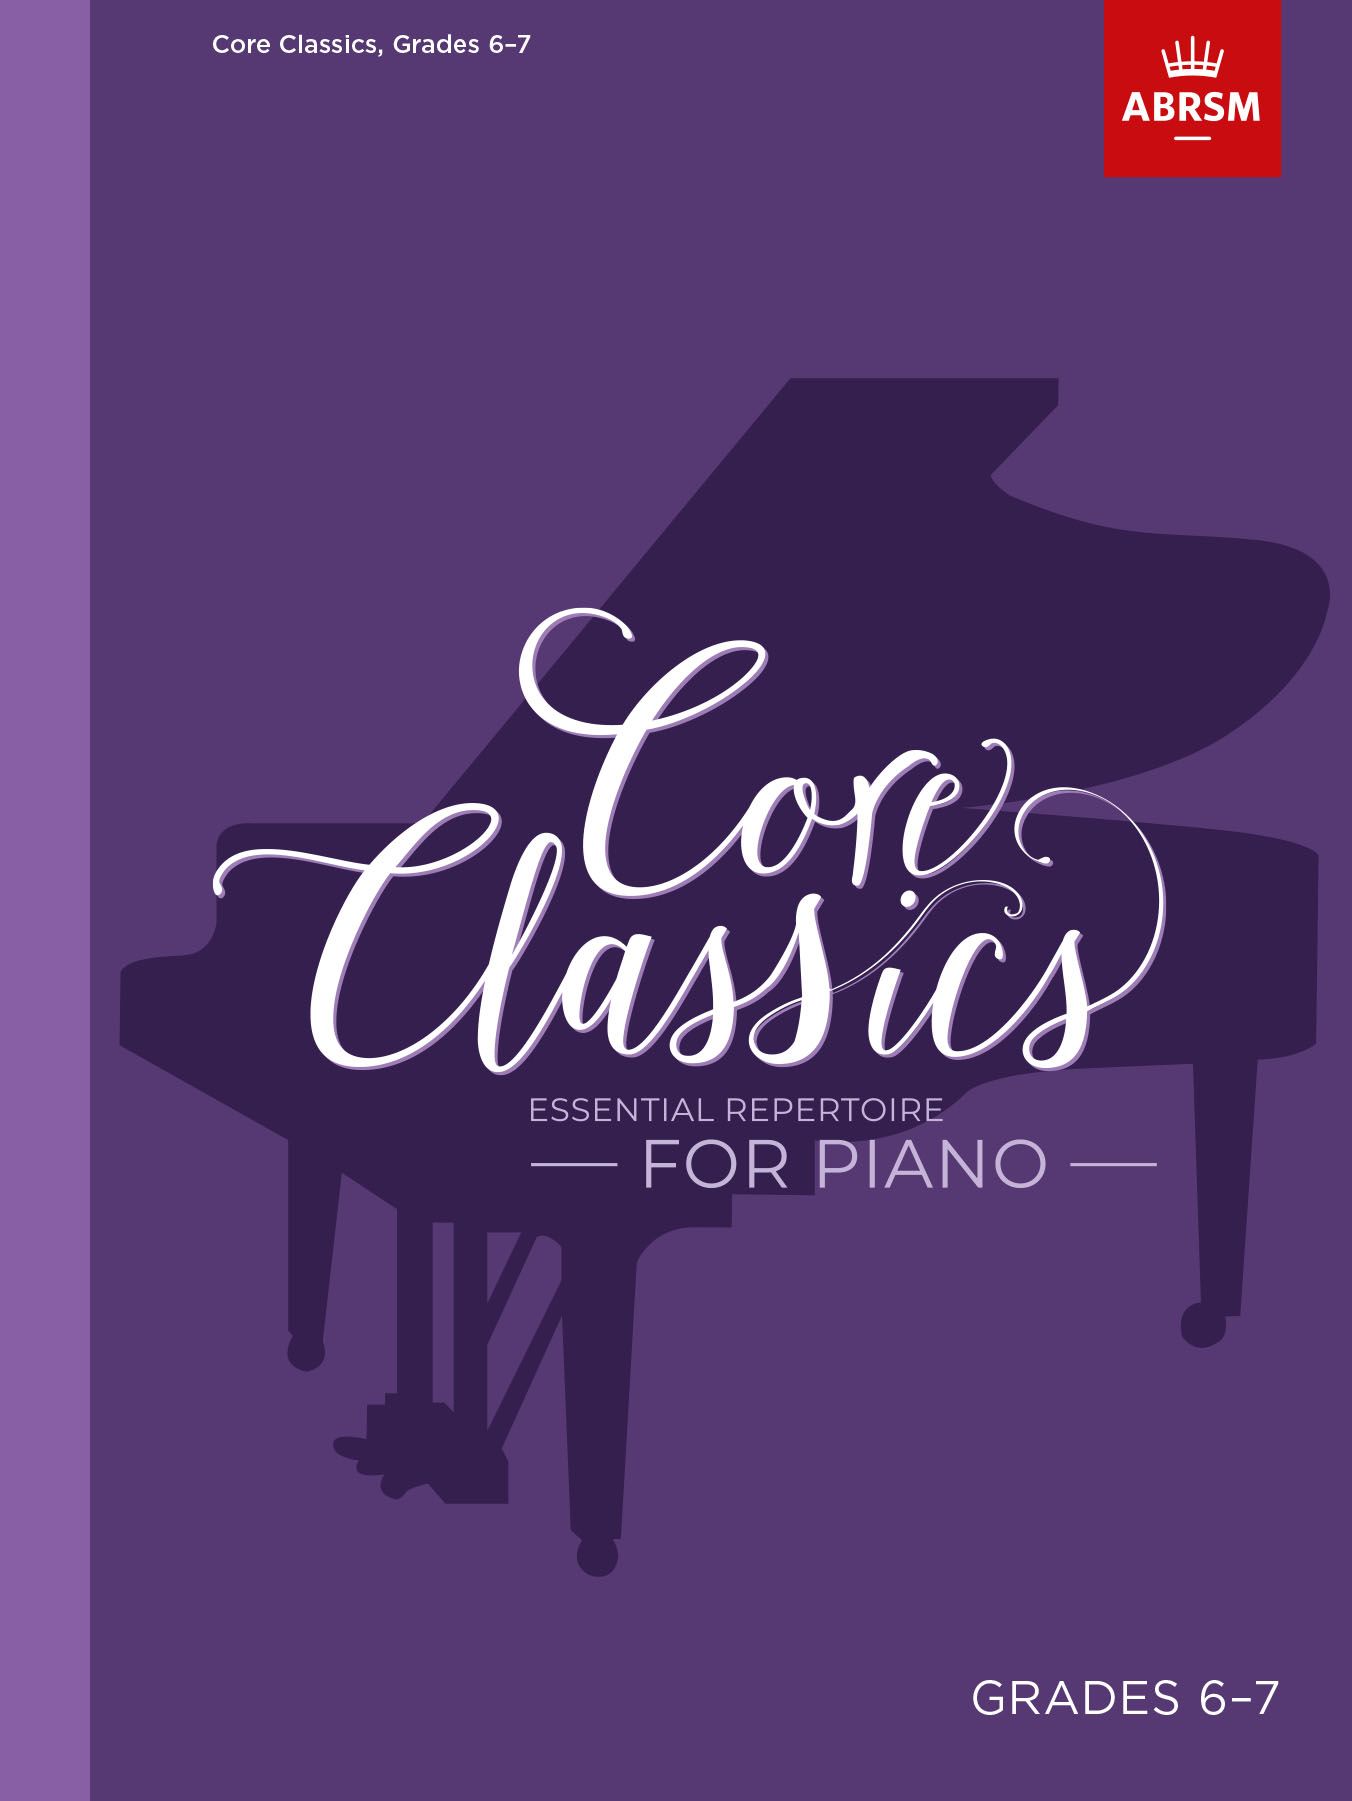 Core Classics - Grades 6-7: Essential Repertoire for Piano